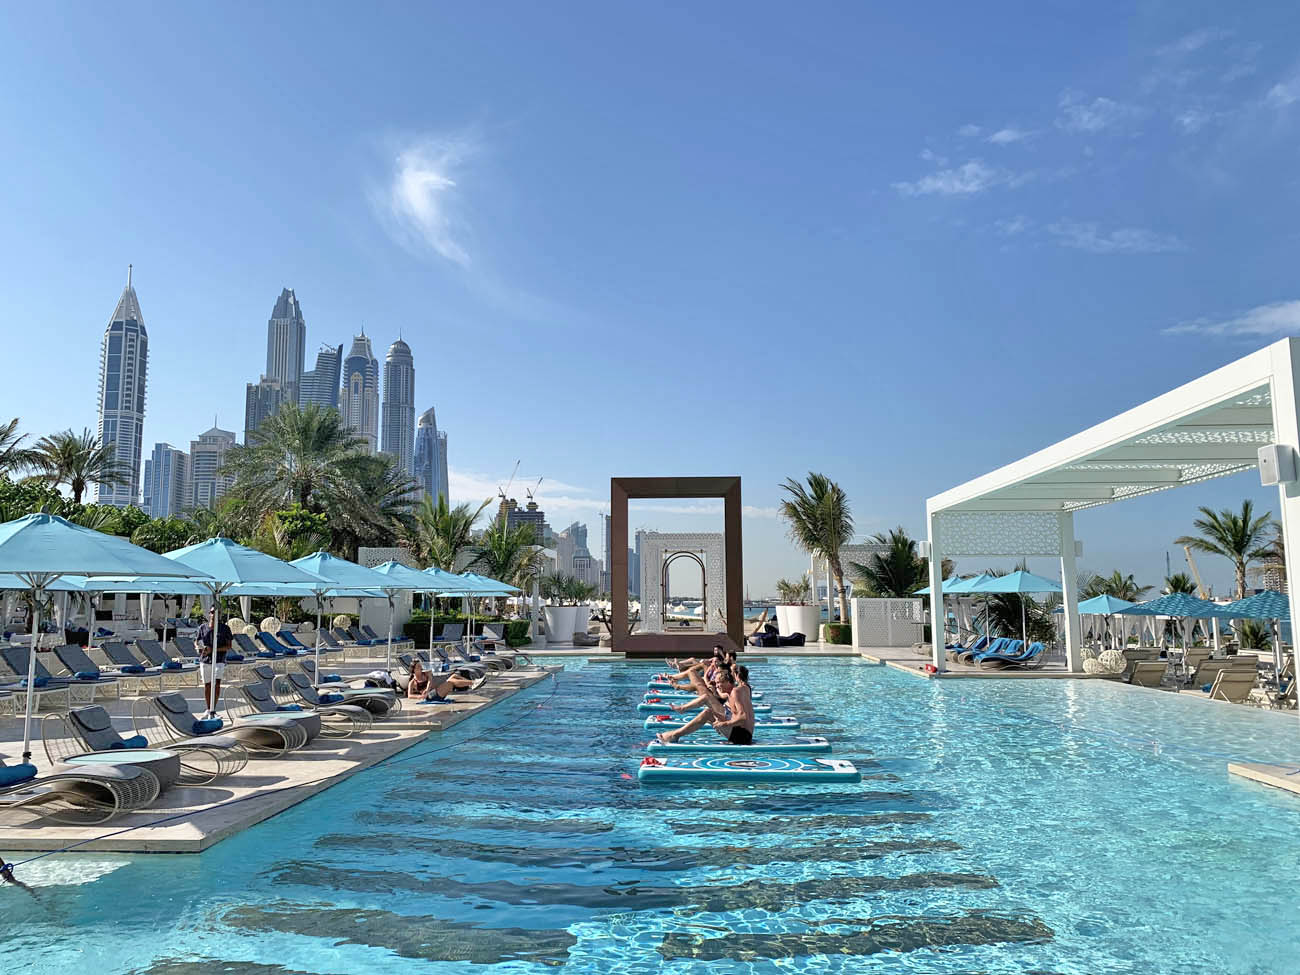 DRIT Beach Dubai - beach club One and Only Royal Mirage